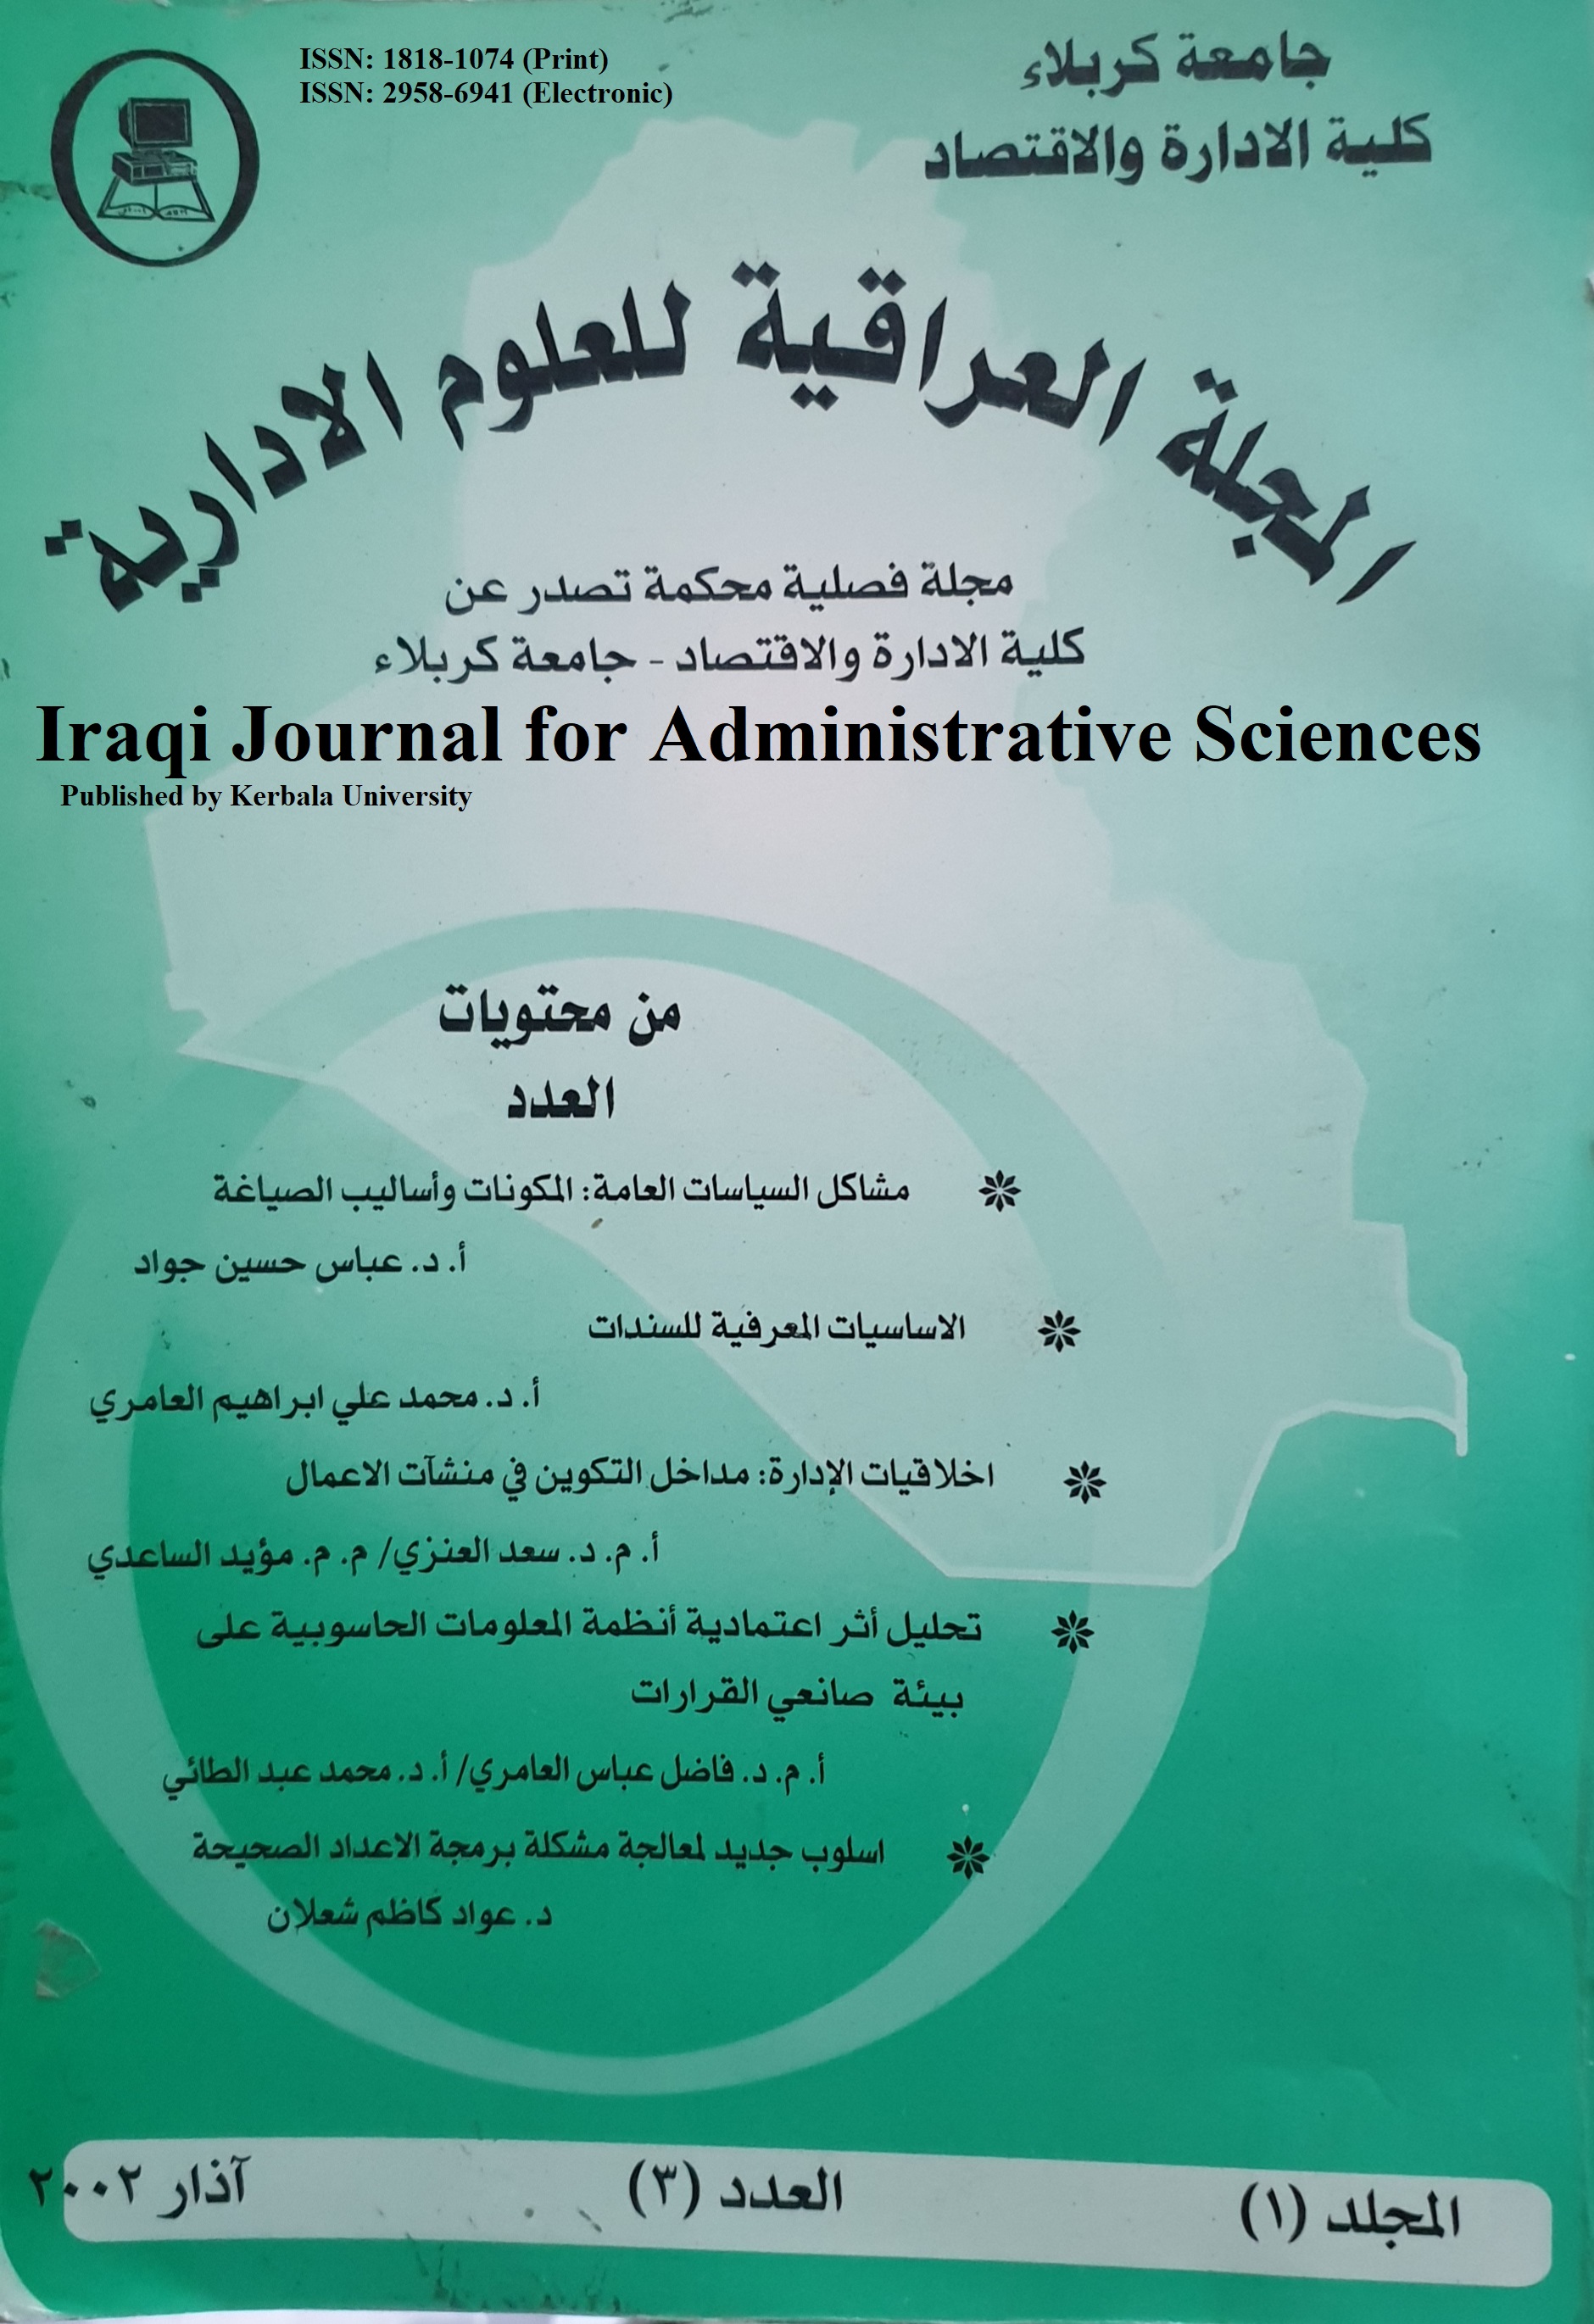 					معاينة مجلد 1 عدد 3 (2002): المجلة العراقية للعلوم الأدارية
				